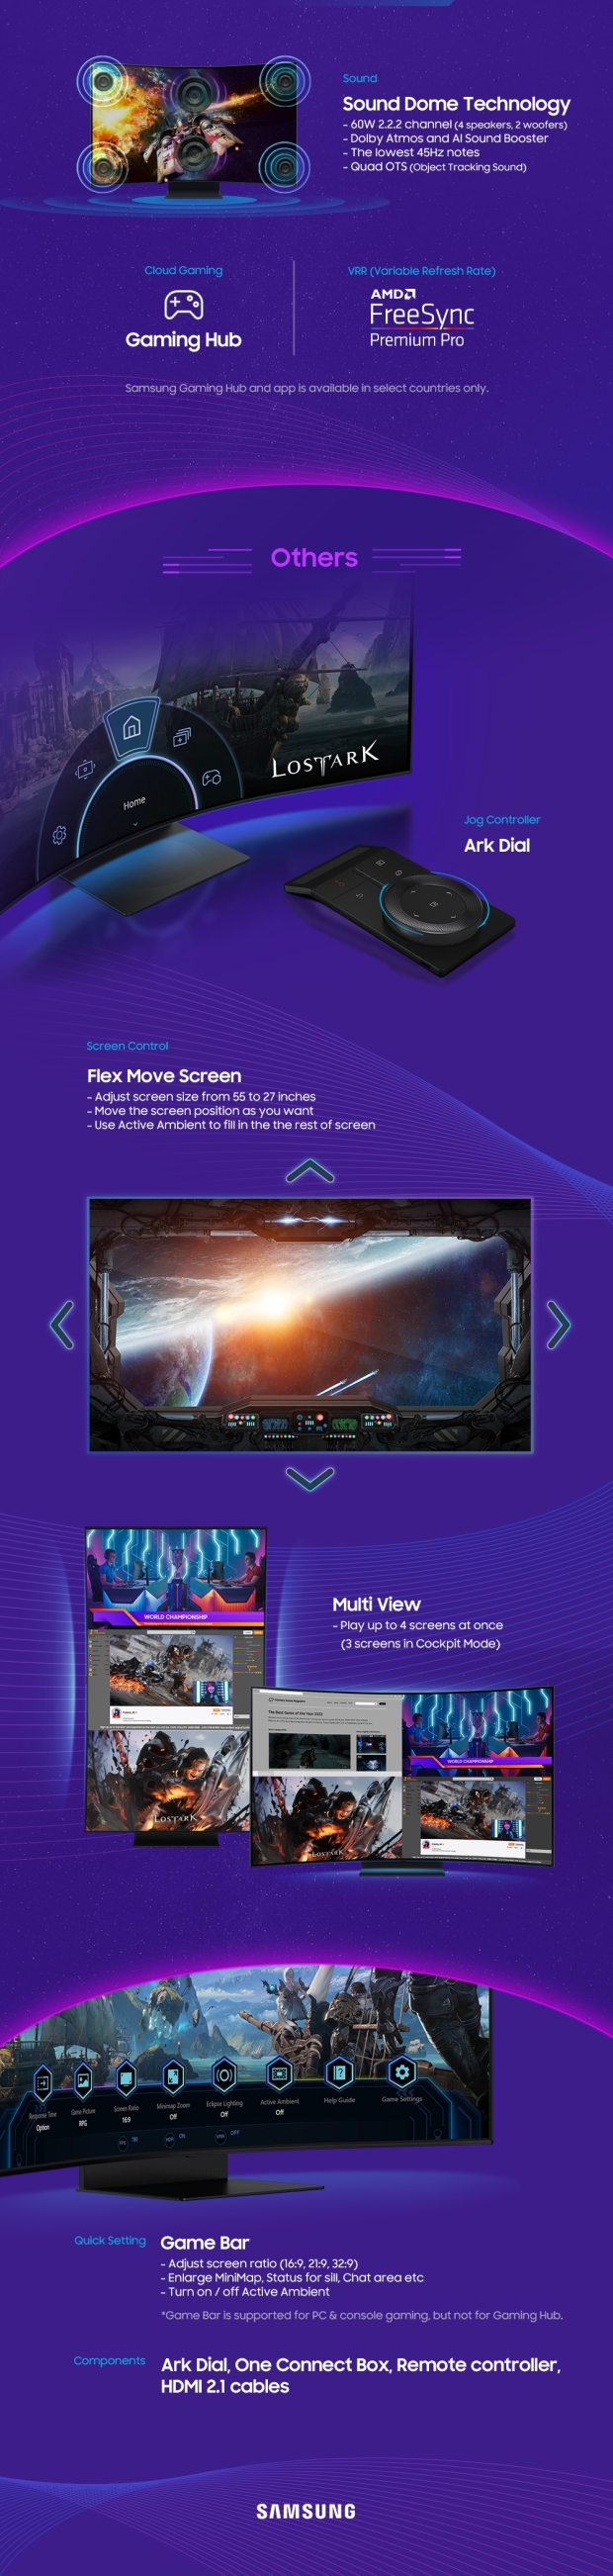 El nuevo monitor para juegos Odyssey Ark 4K 165Hz de 55 pulgadas de Samsung cuesta más de $3500 06 |  TweakTown.com